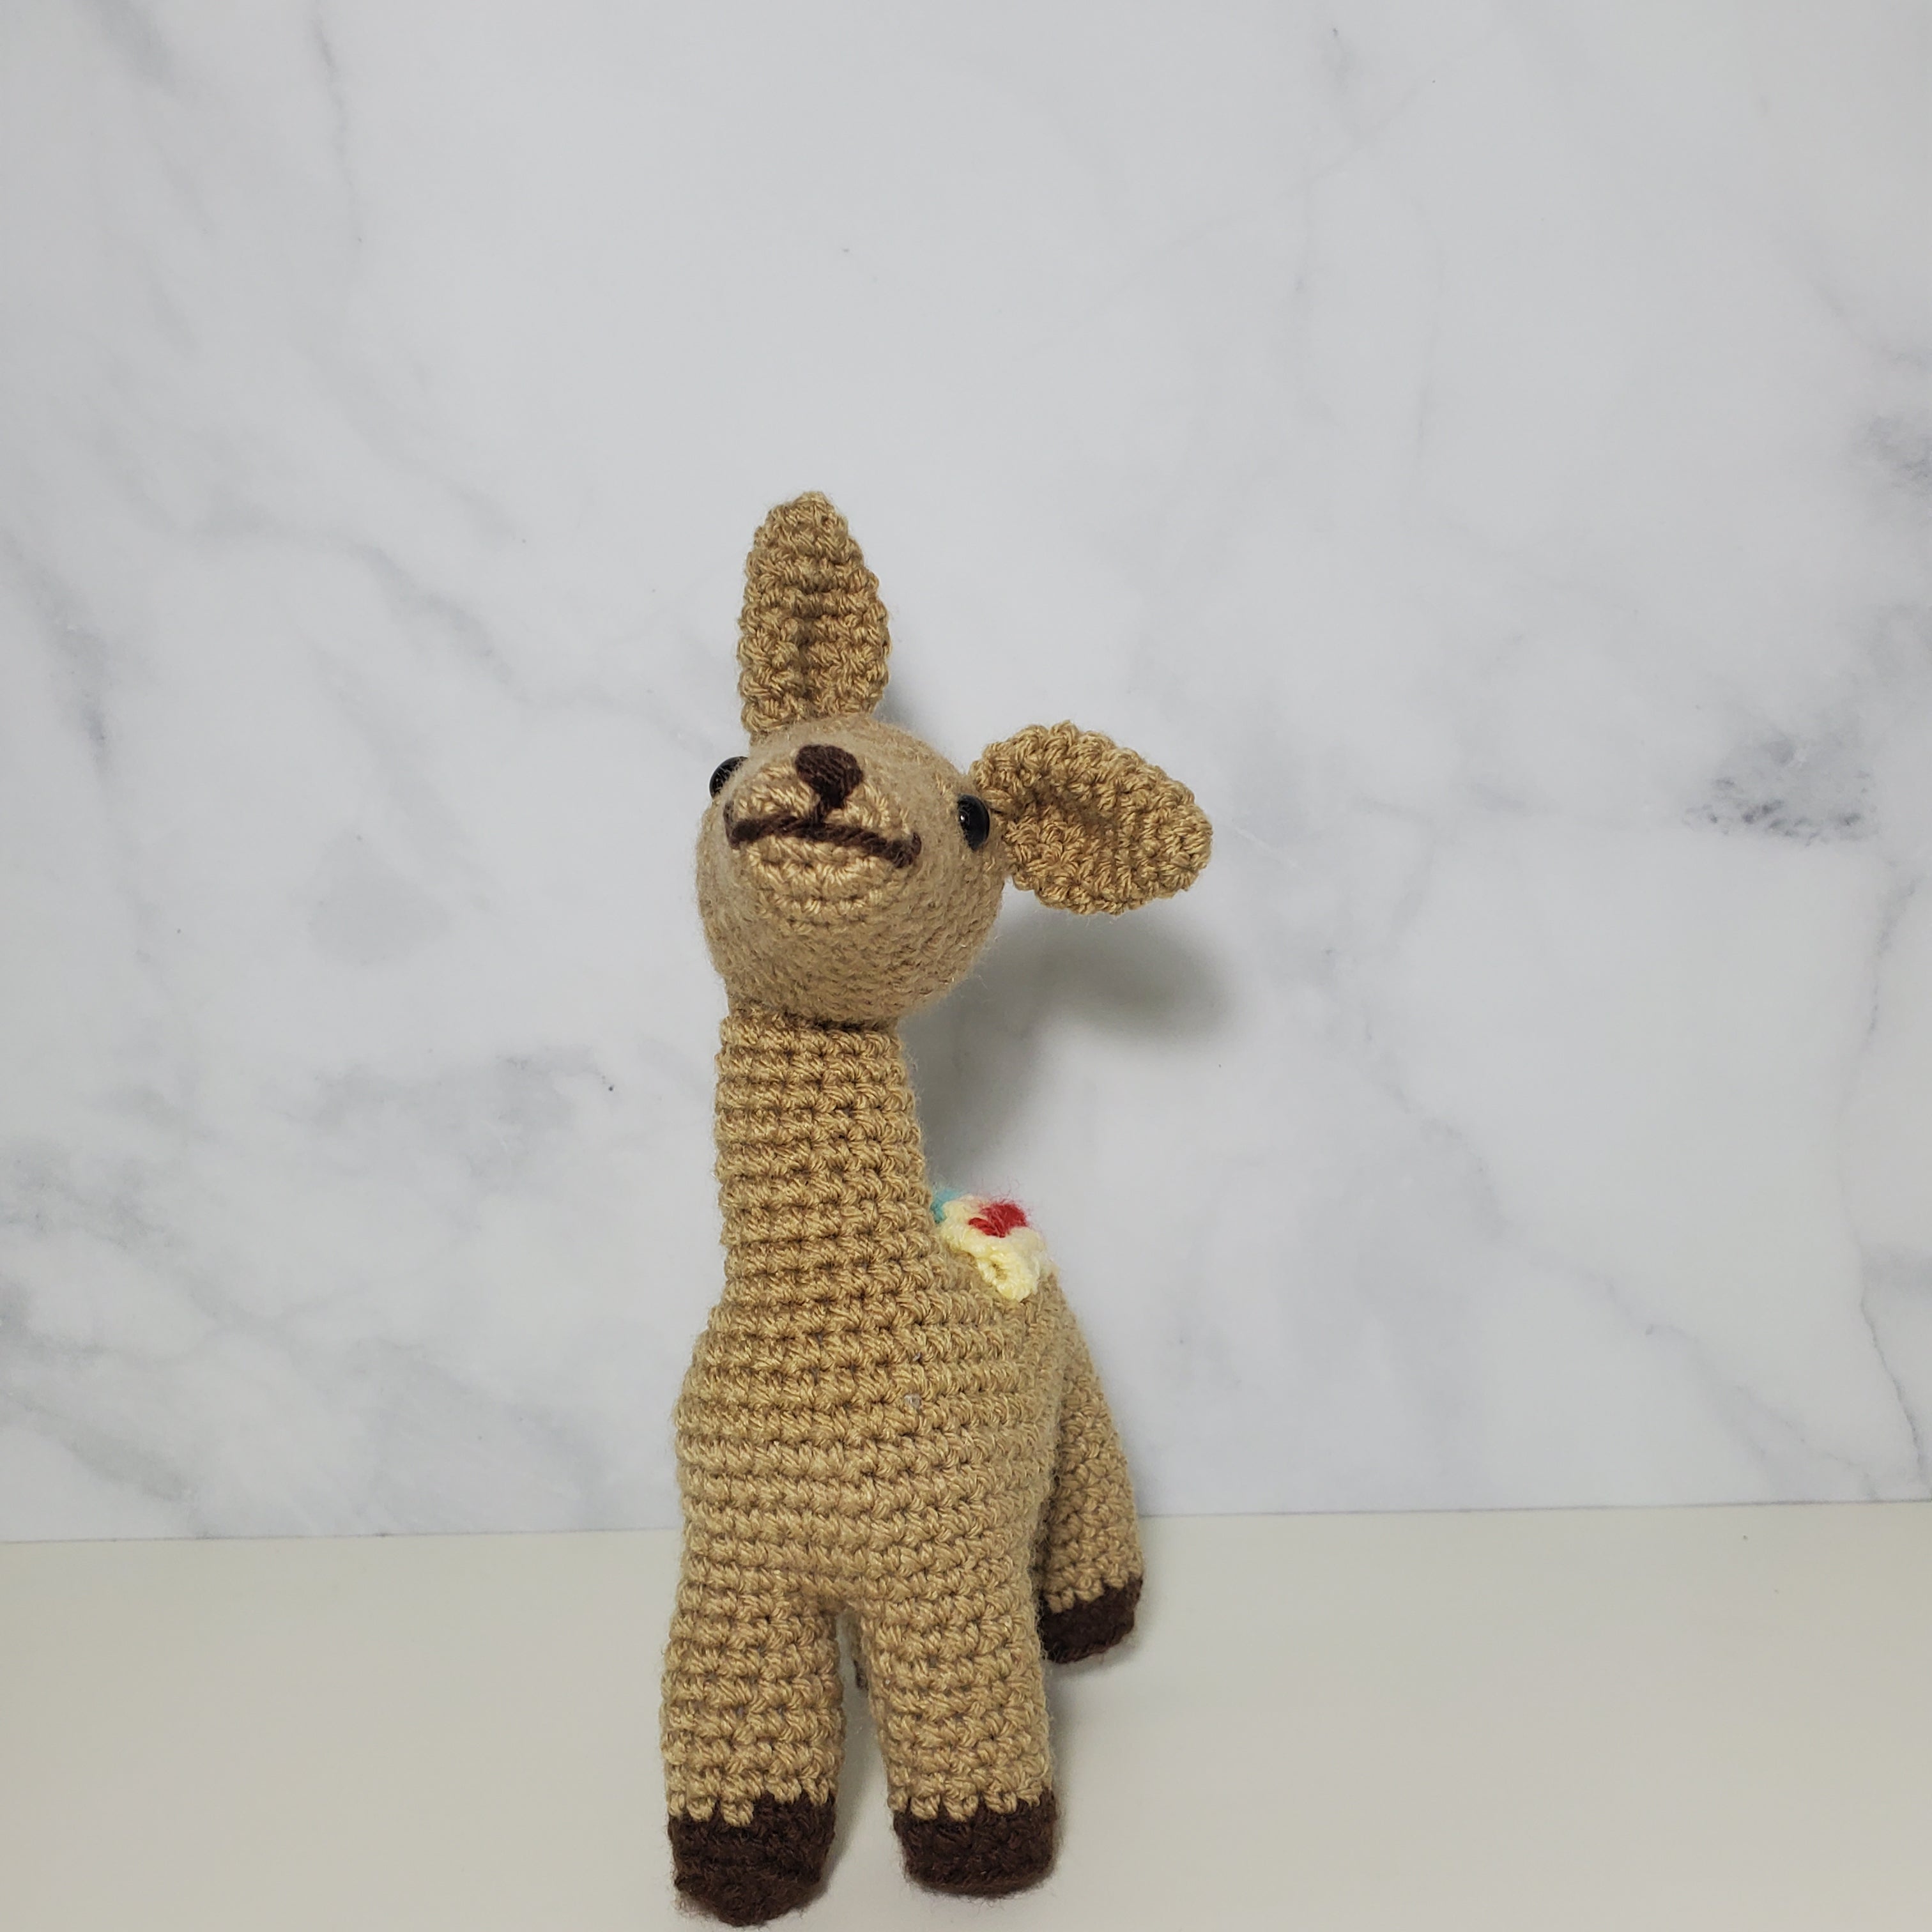 Llama Plush Toy - 9 Inches